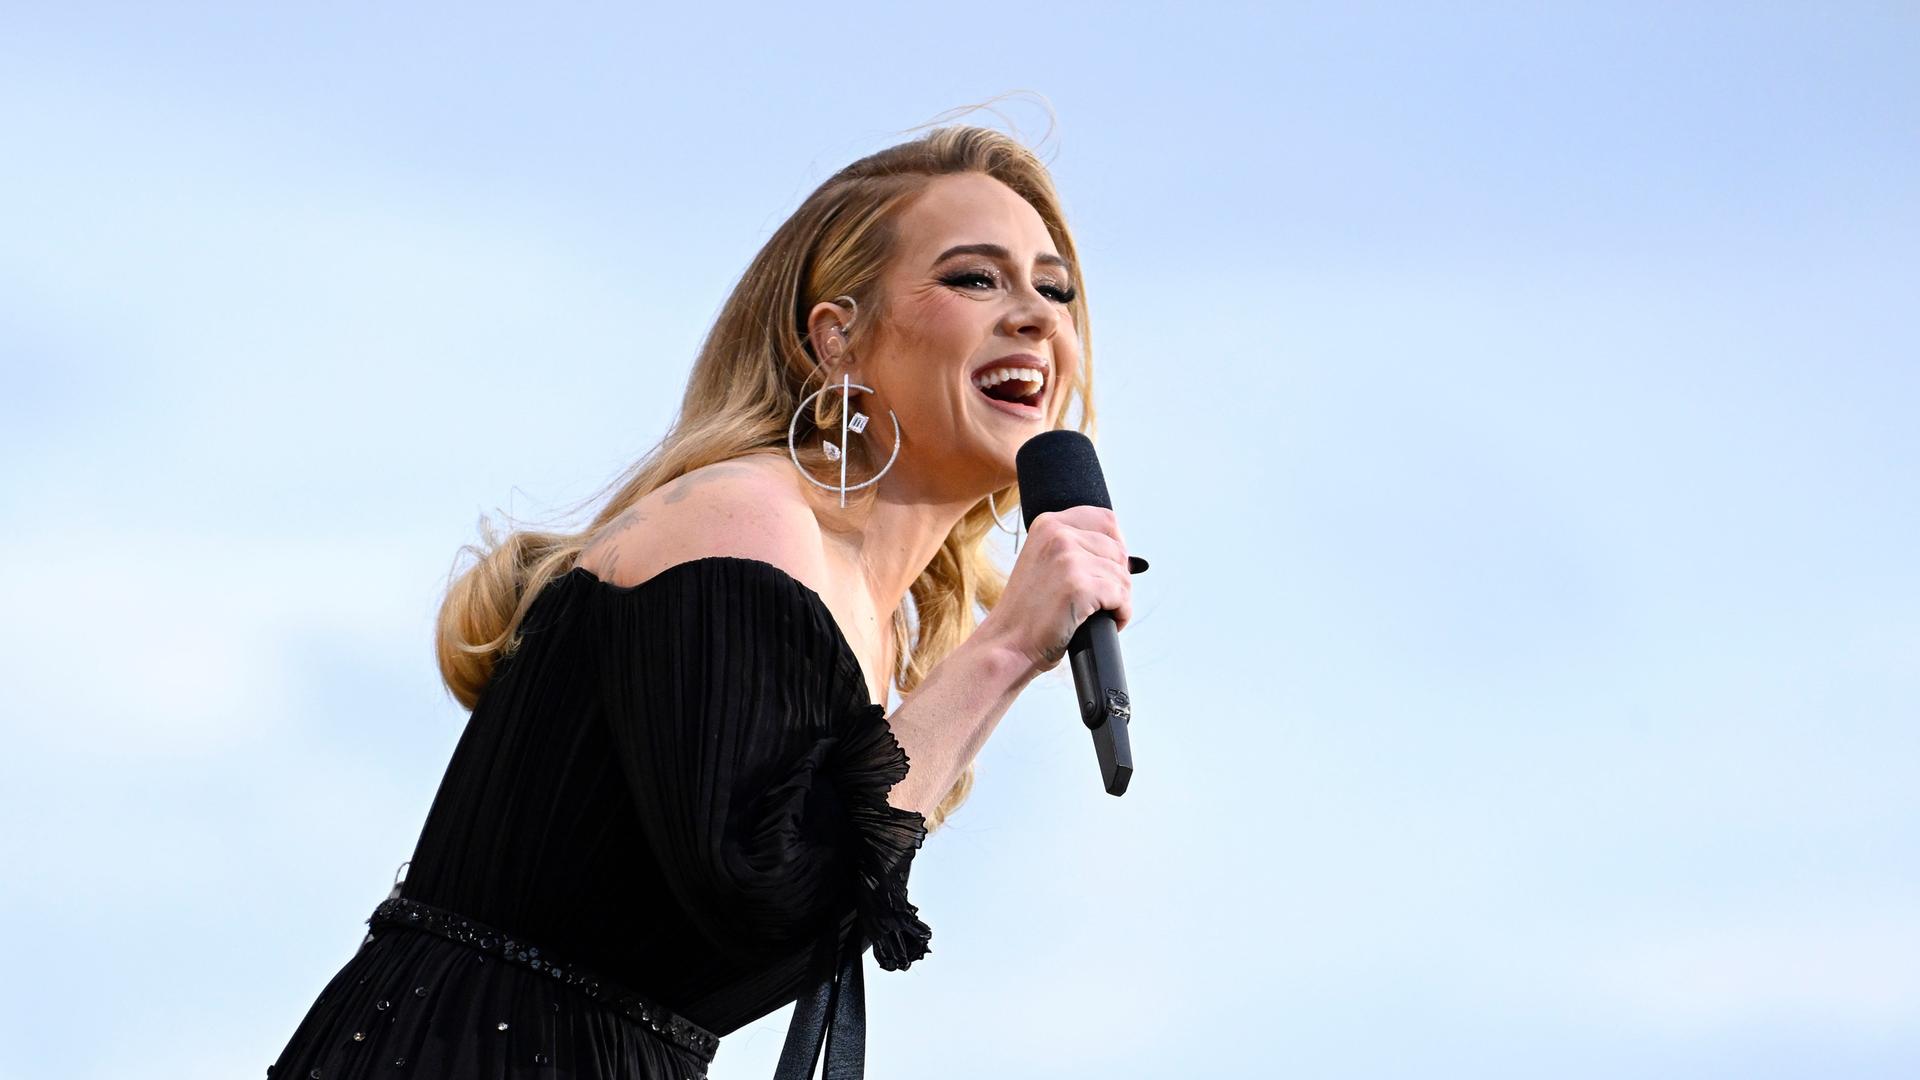 Die Sängerin Adele auf der Bühne in schwarzem Kleid vor blauem Himmel mit einem Mikrofon in der Hand.